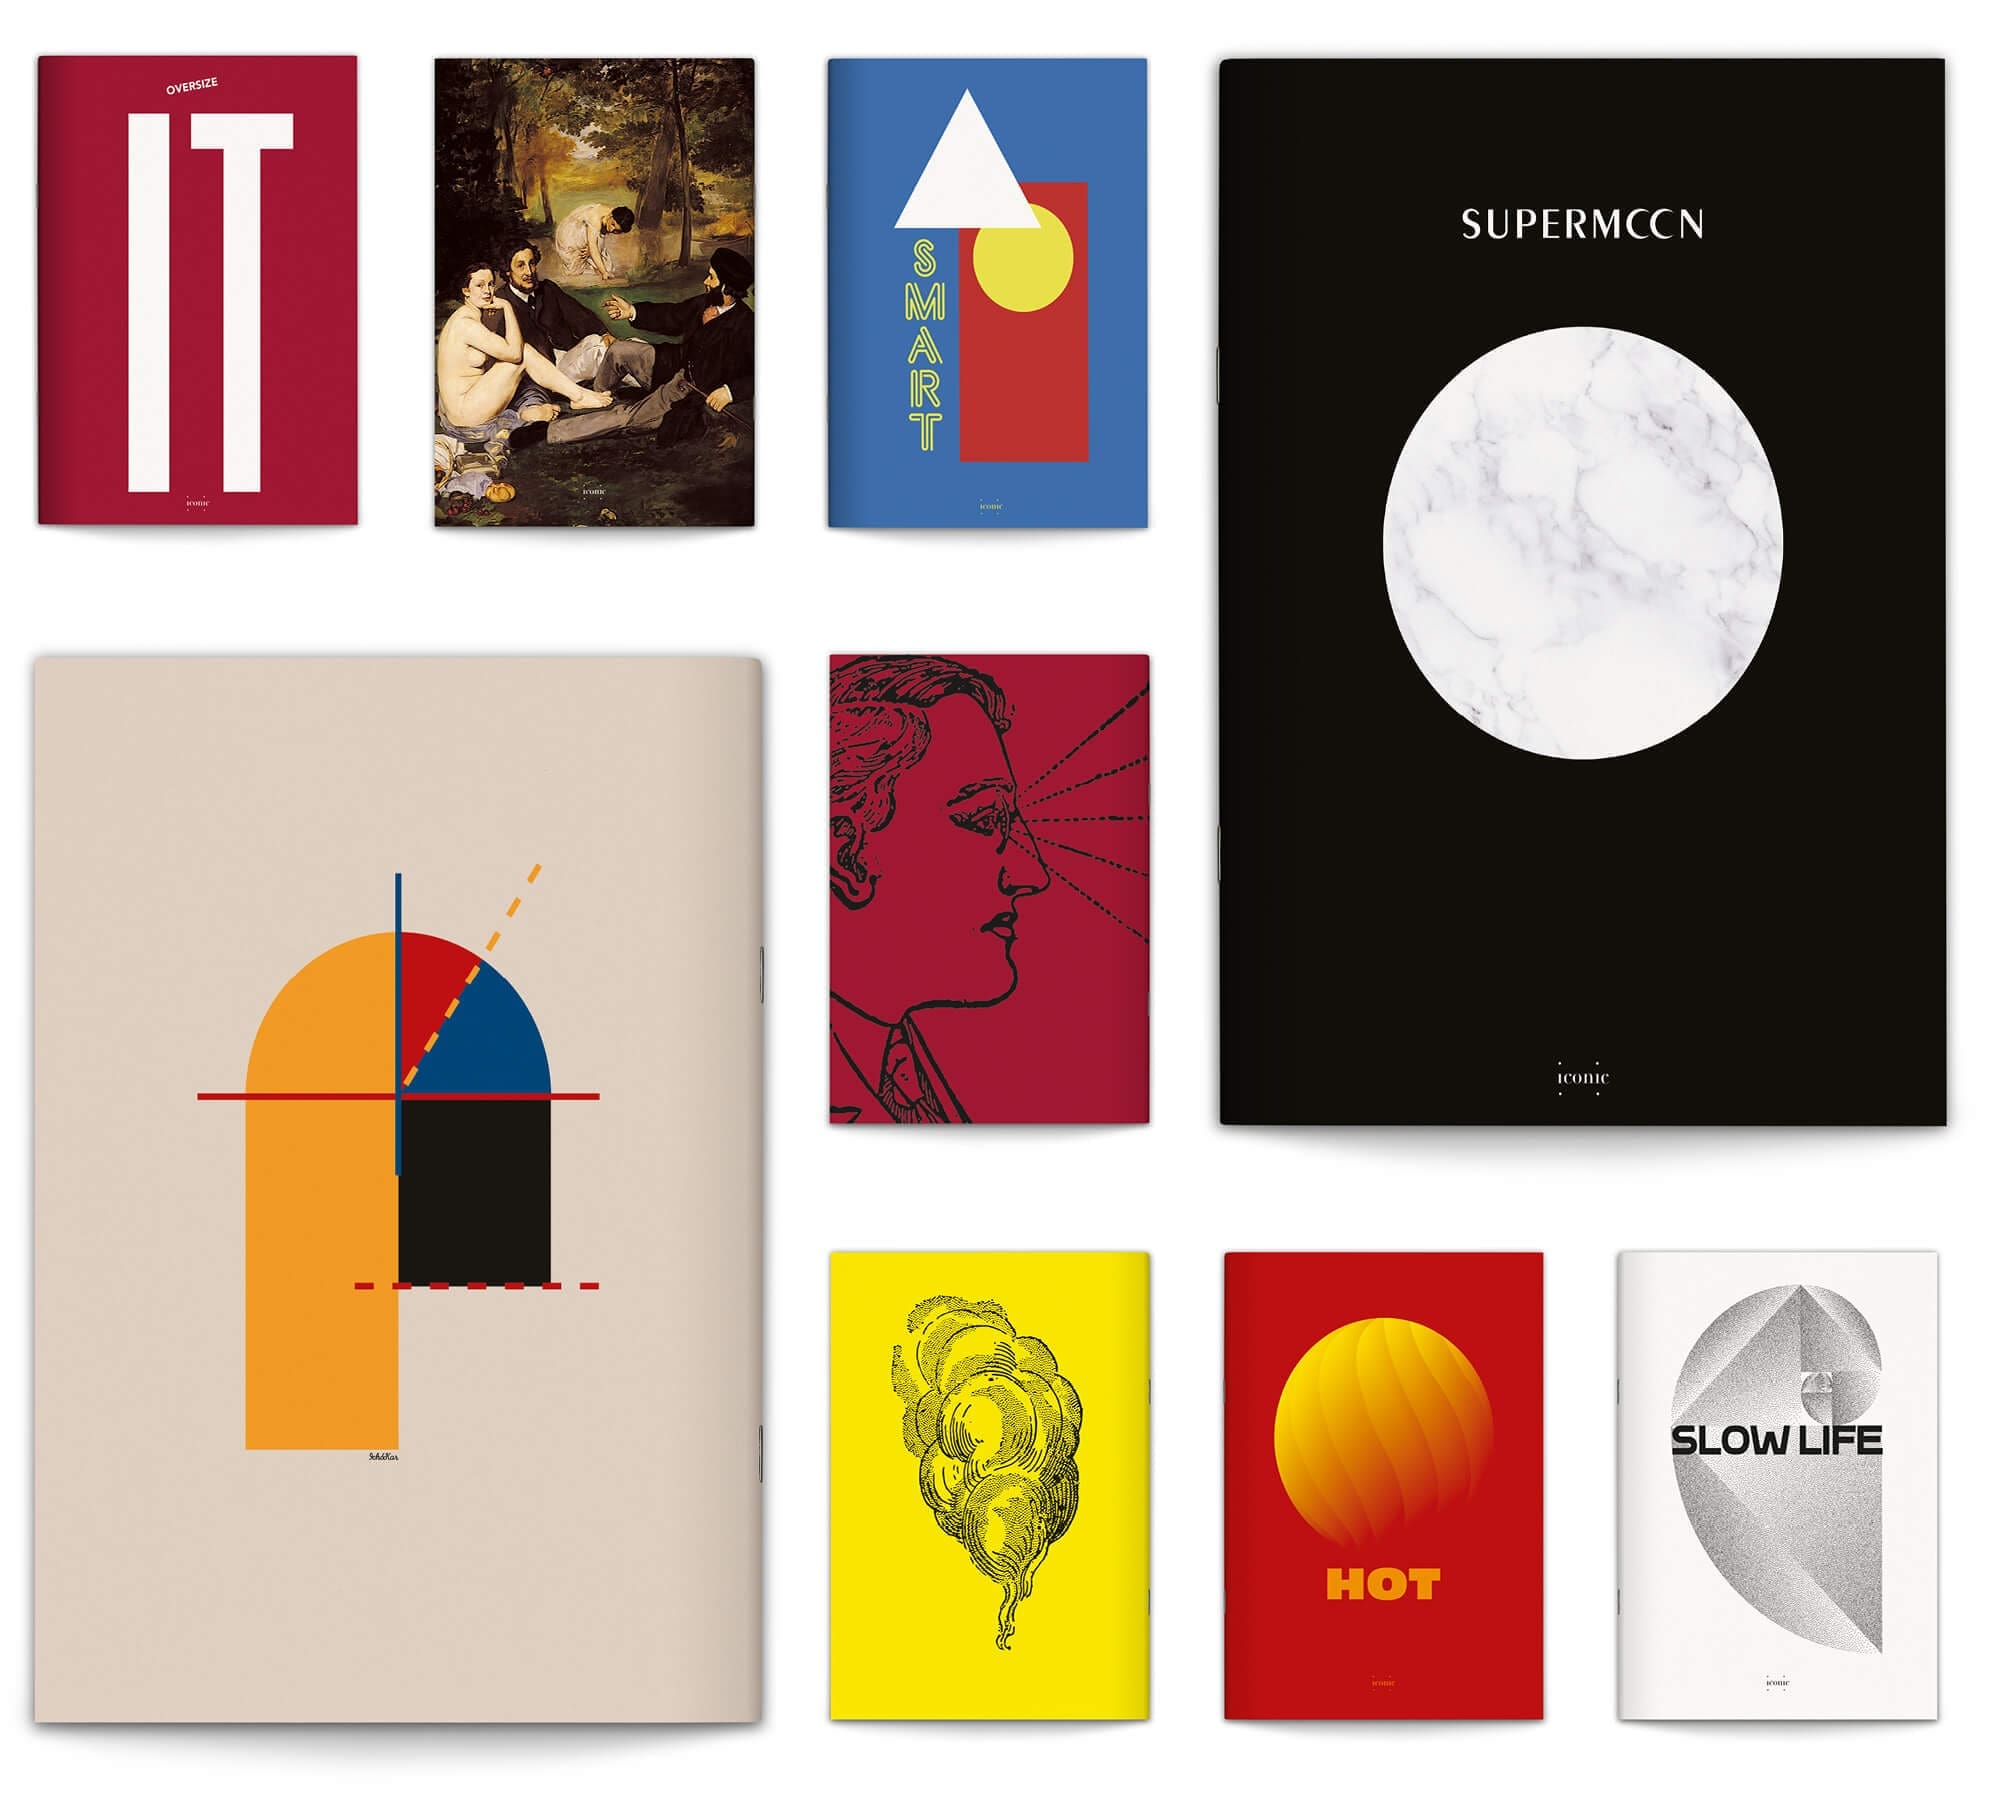 ichetkar dessine la maquette du magazine de design designerbox, les trois premiers numéros disposés en eventail montent les couvertures illustrées